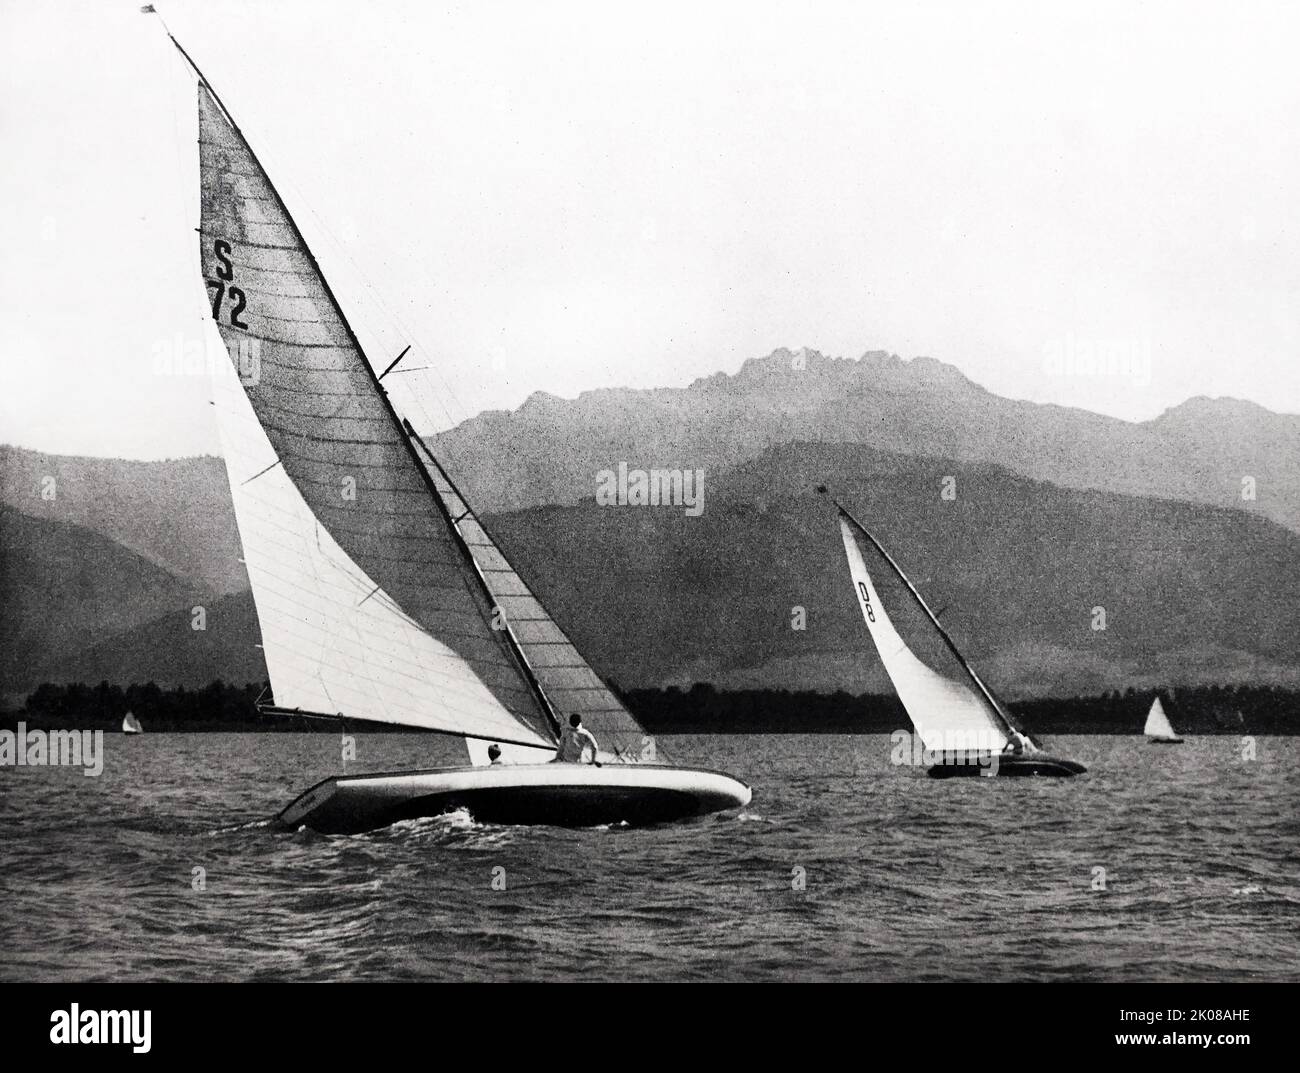 Comme un énorme oiseau. Sonderboat sur le lac Chiem, Bavière, Allemagne. Photographie en noir et blanc, c1940s Banque D'Images